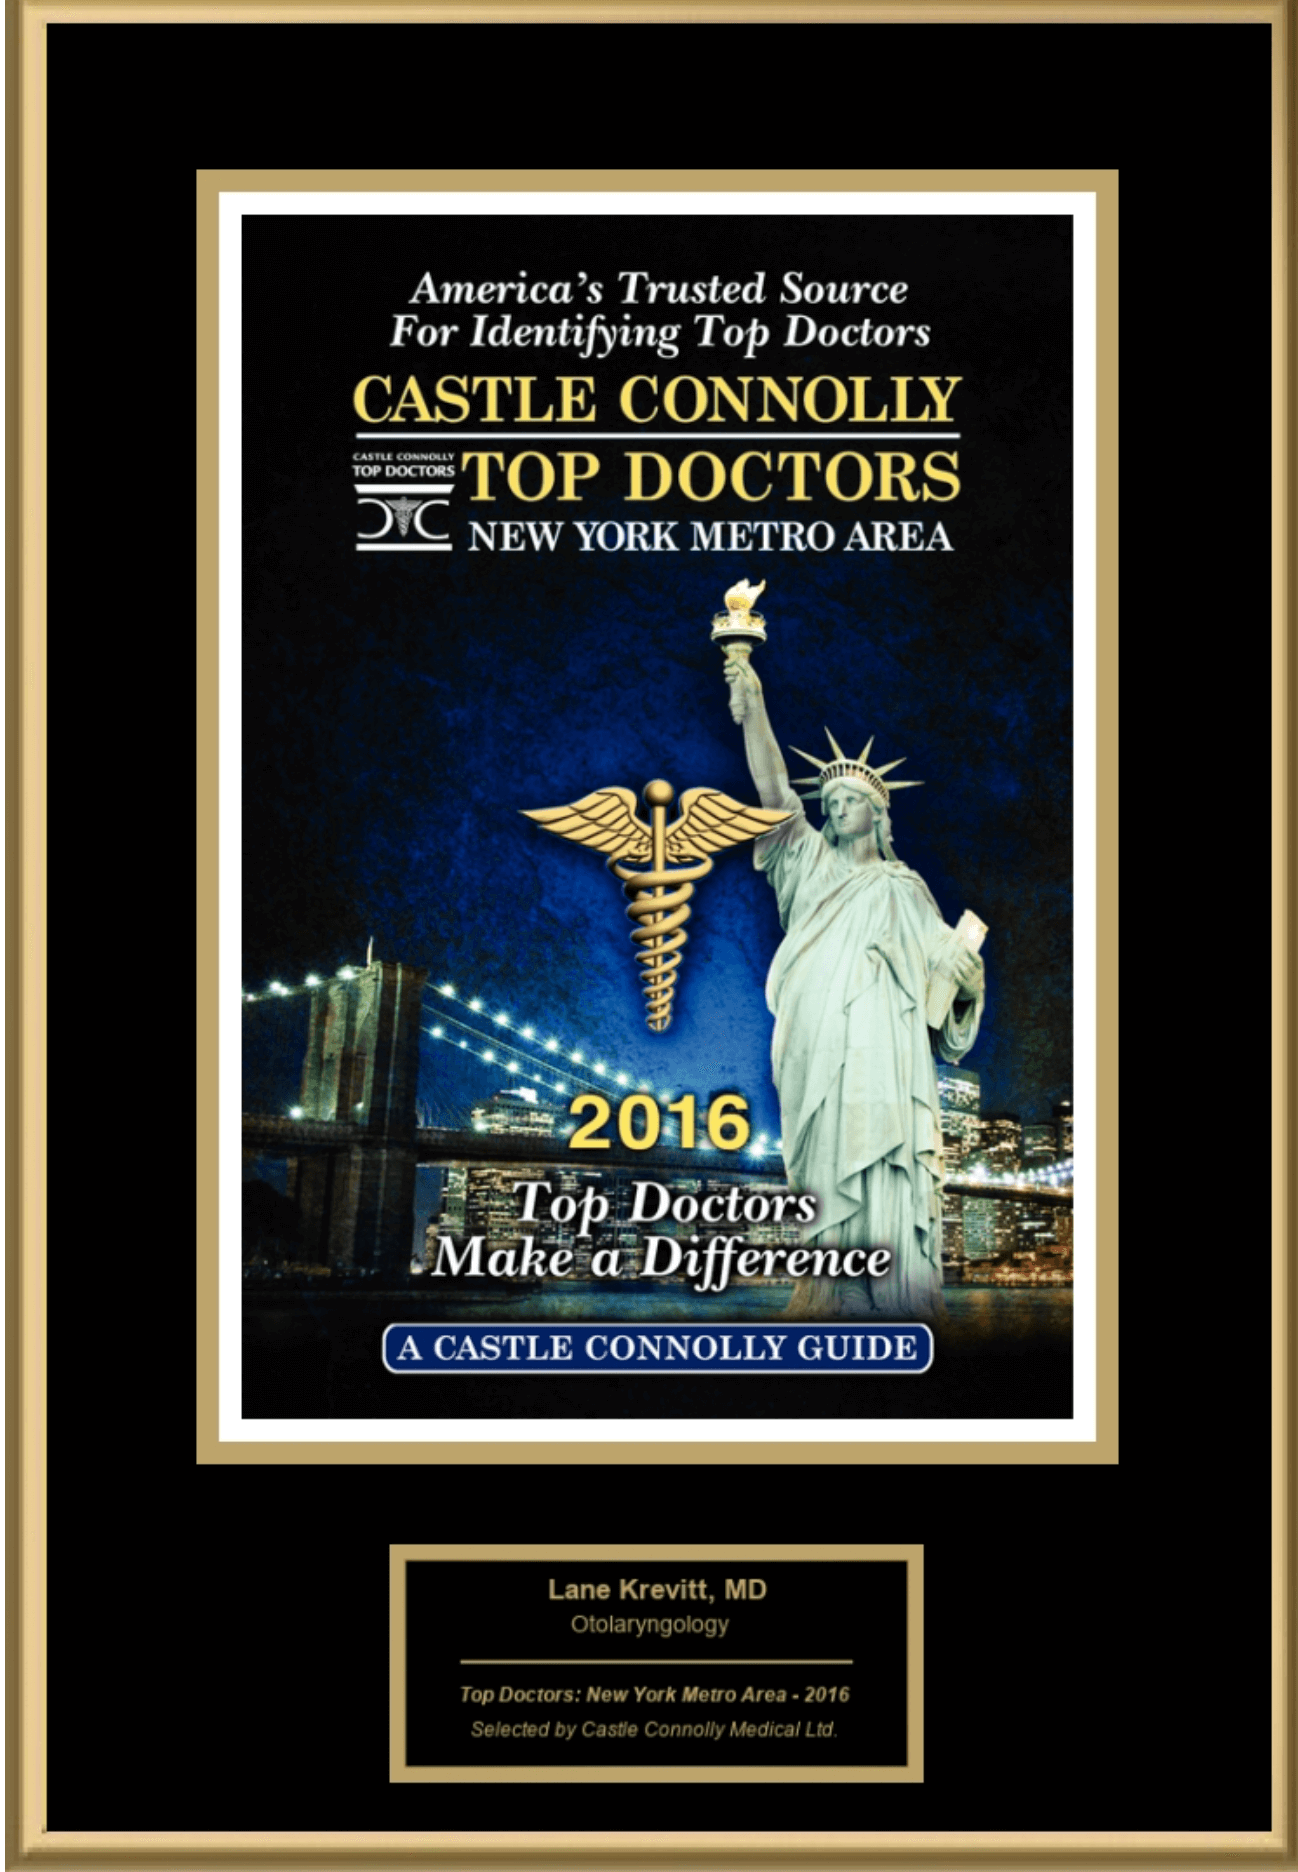 Dr. Krevitt Named as a Castle Connolly Top Doctor 2016